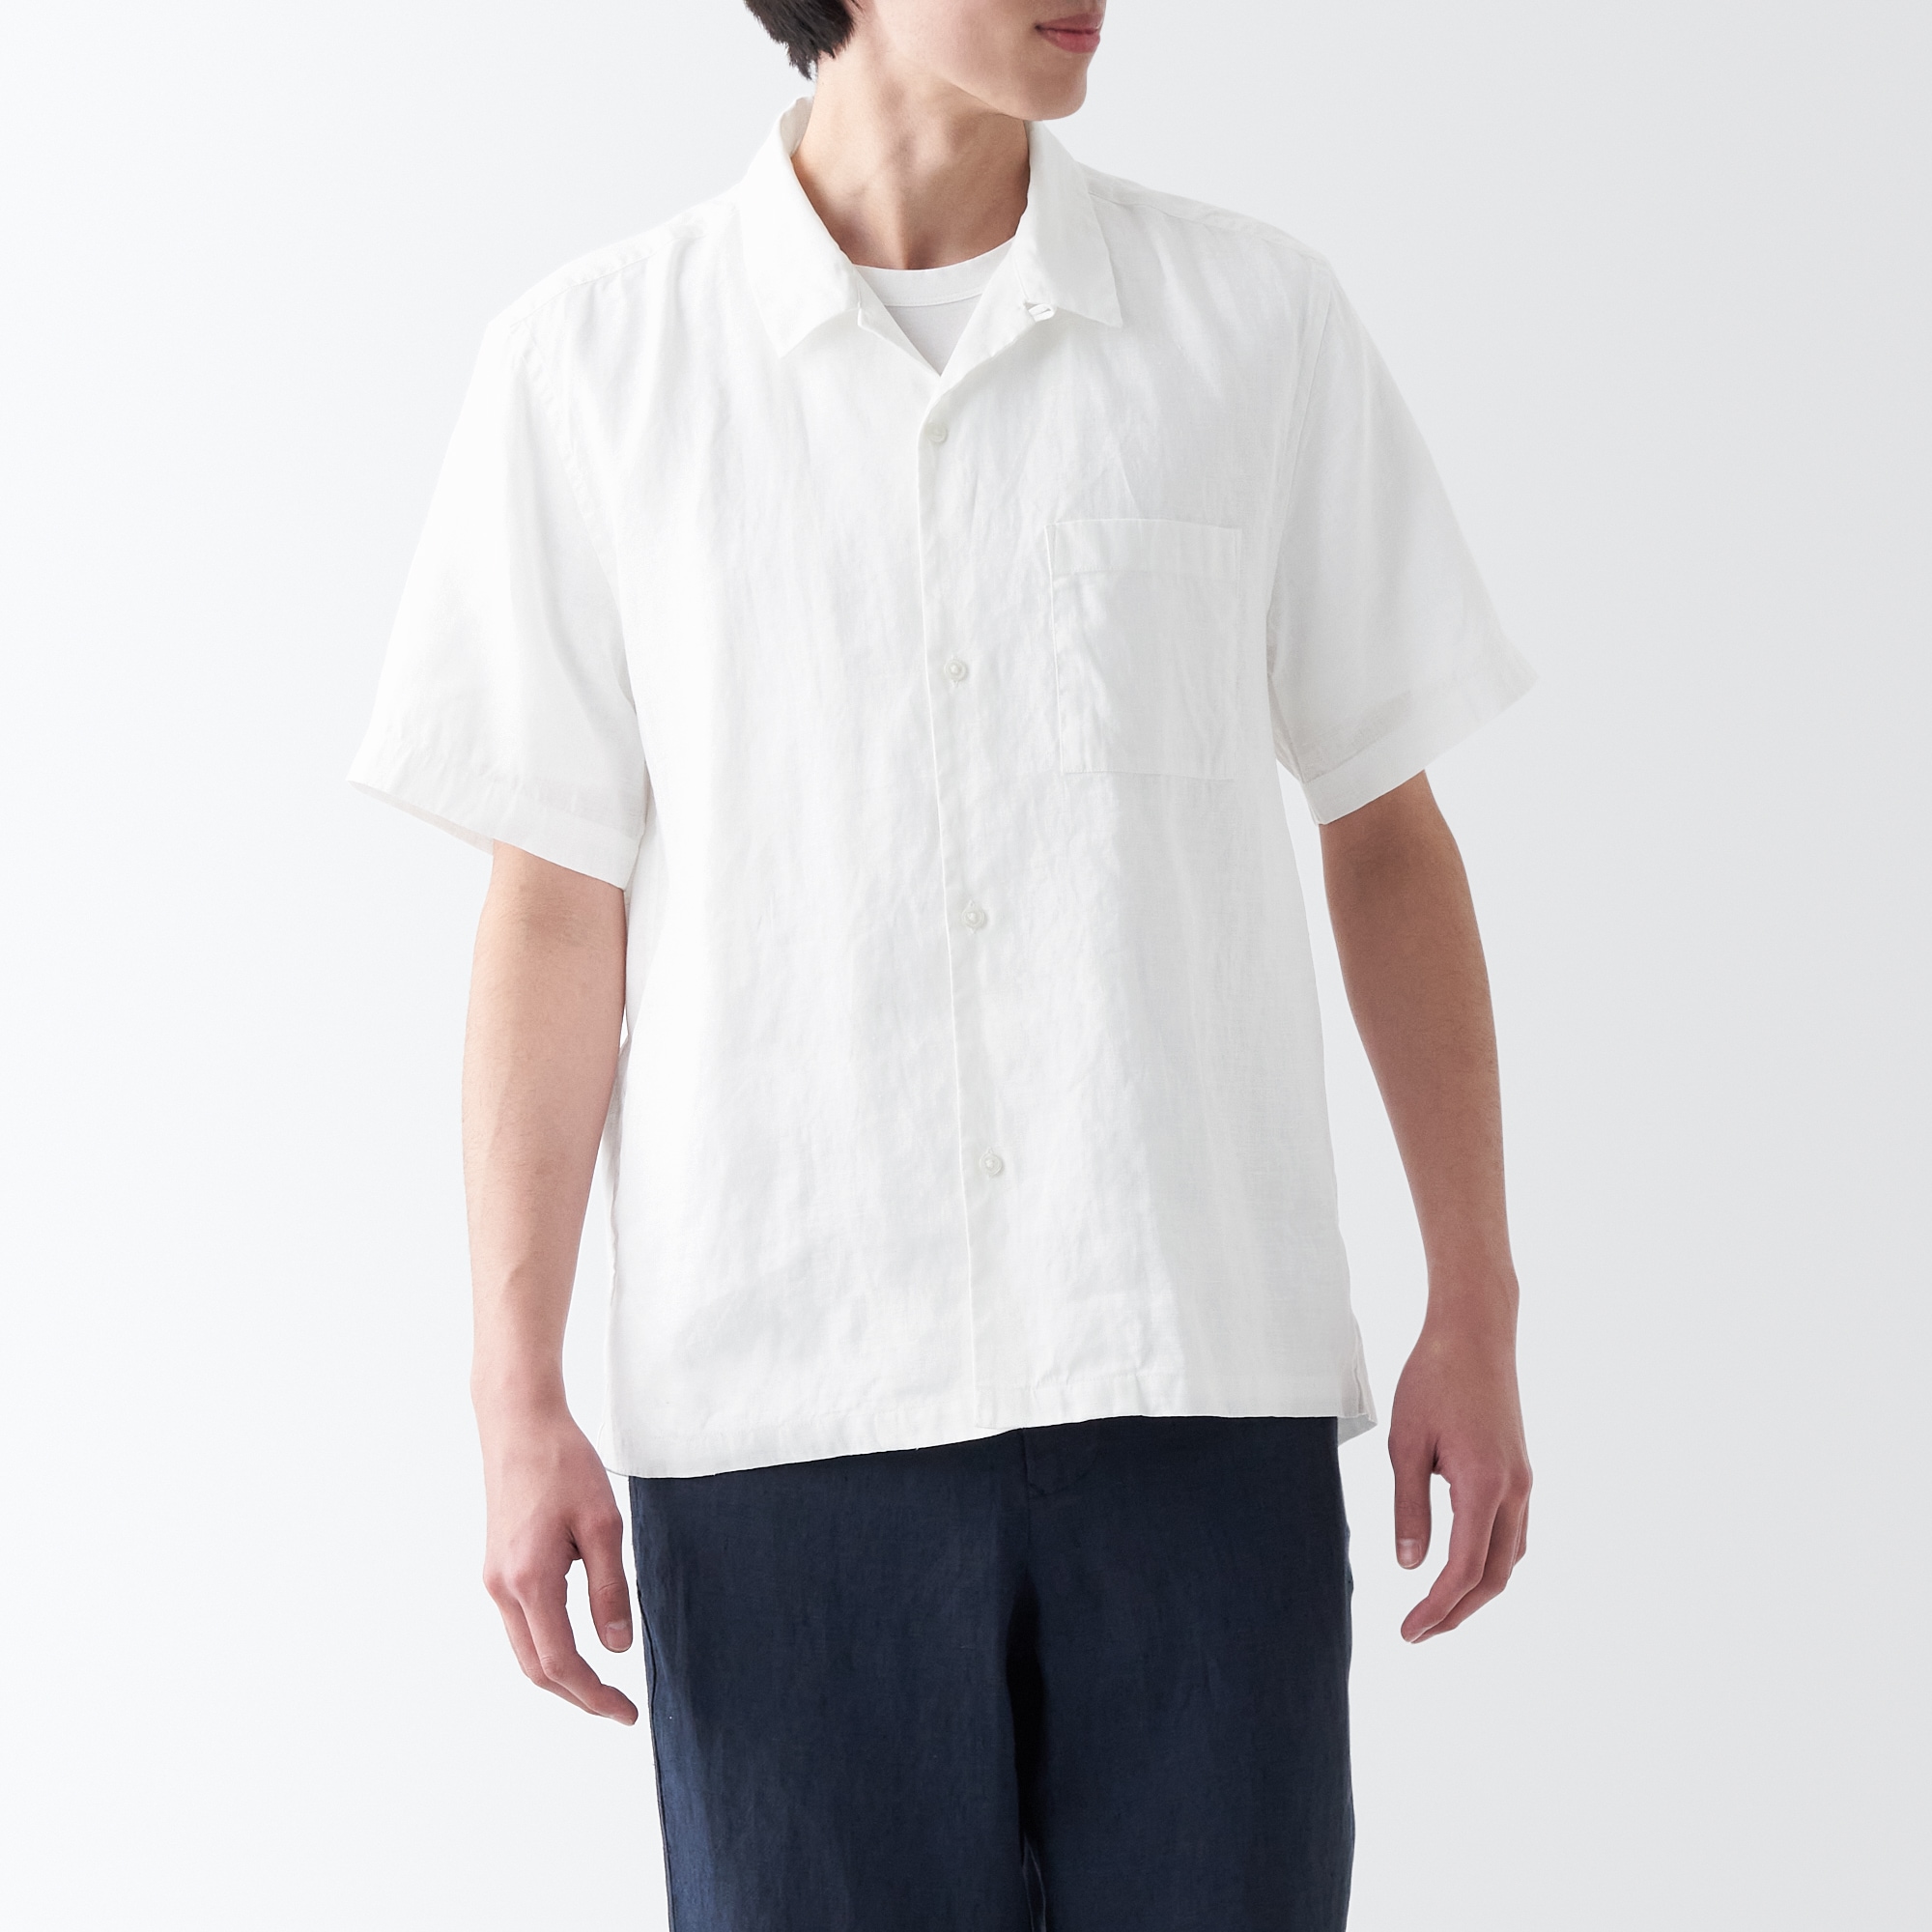 무인양품 일본 남성 반팔 셔츠 헴프 워시드 아웃 오픈카라